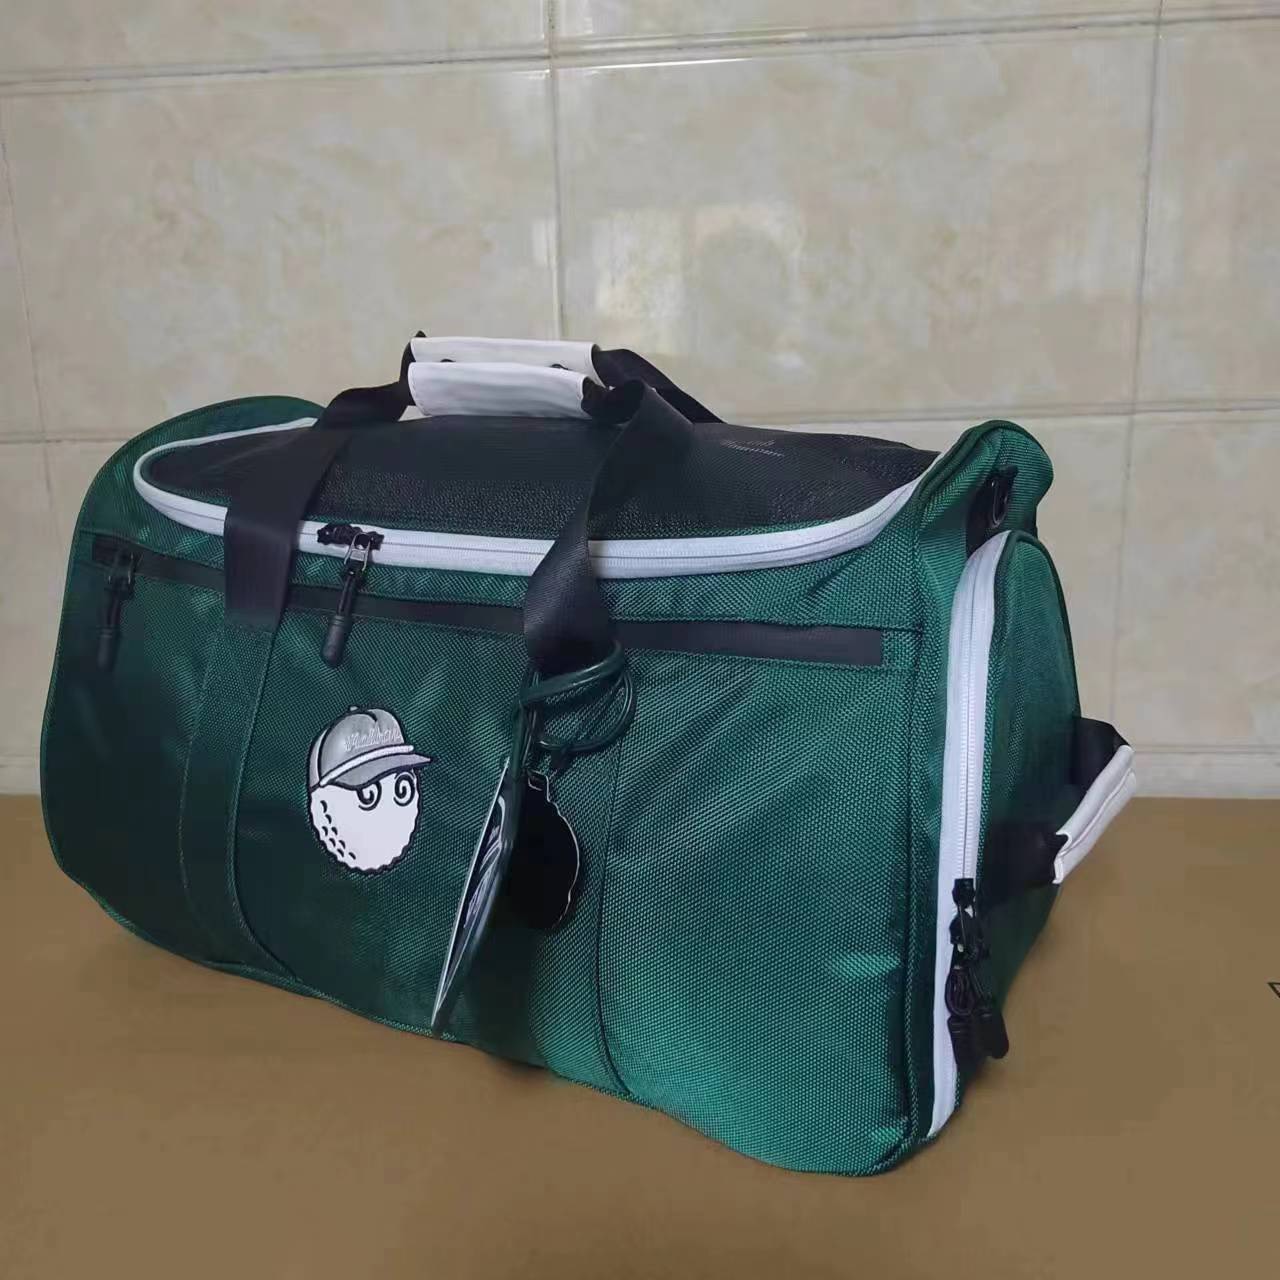 Túi golf - túi đựng quần áo và giày golf Malbon vải bạt cao cấp, chống nước hiệu quả